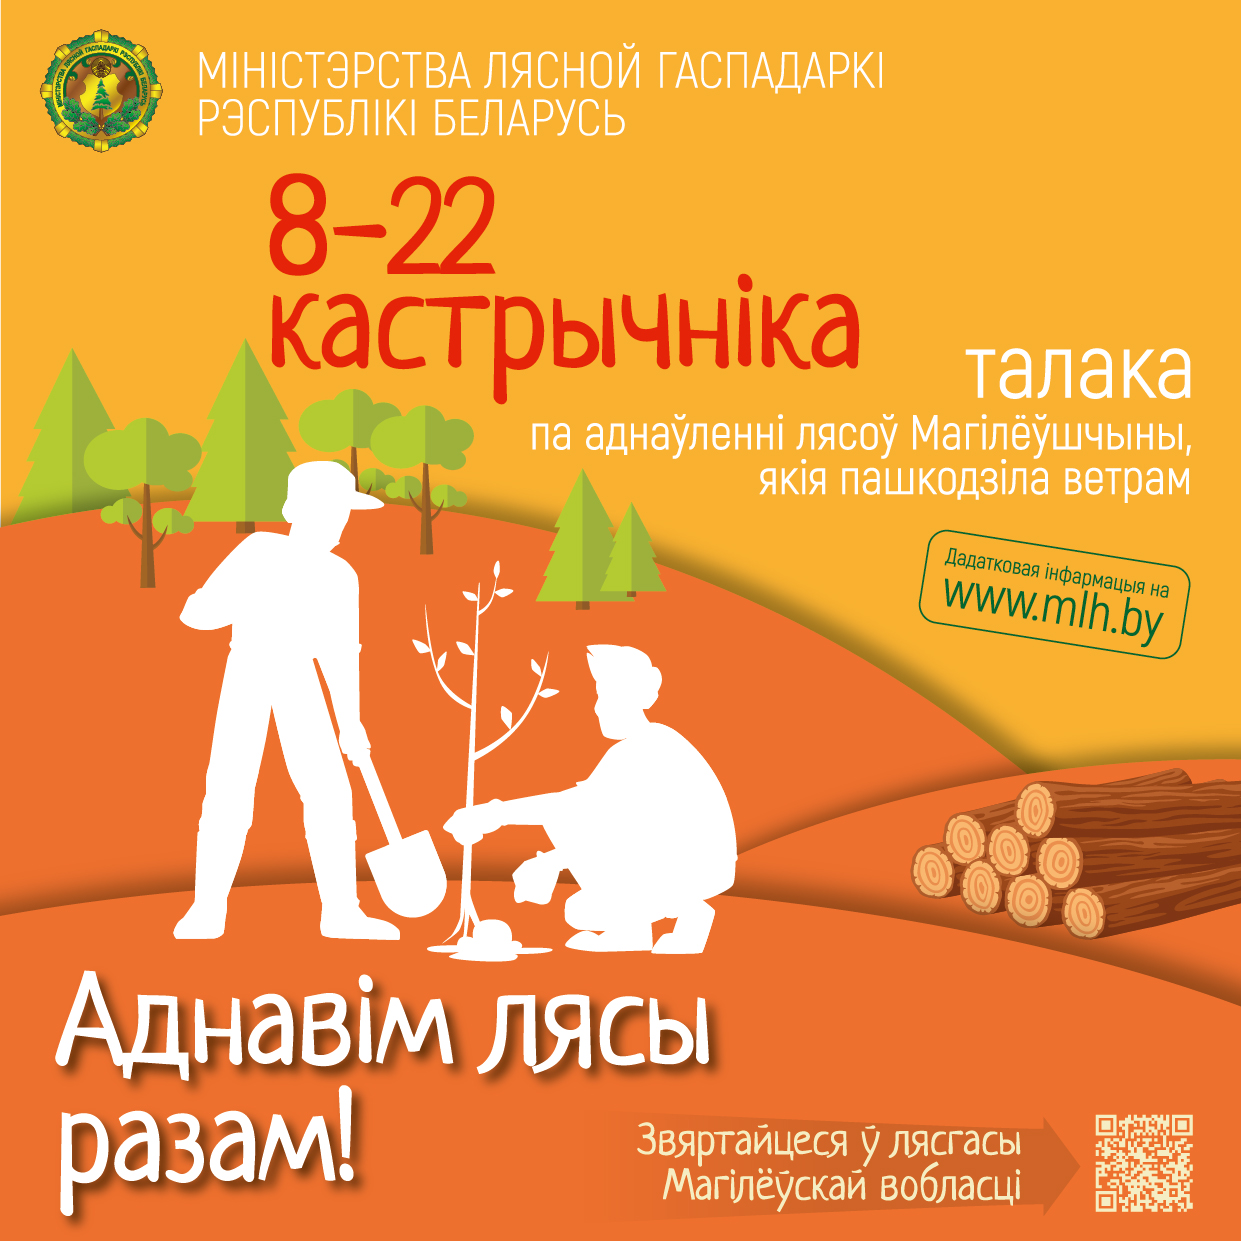 Акция по обновлению лесов Могилёвщины!